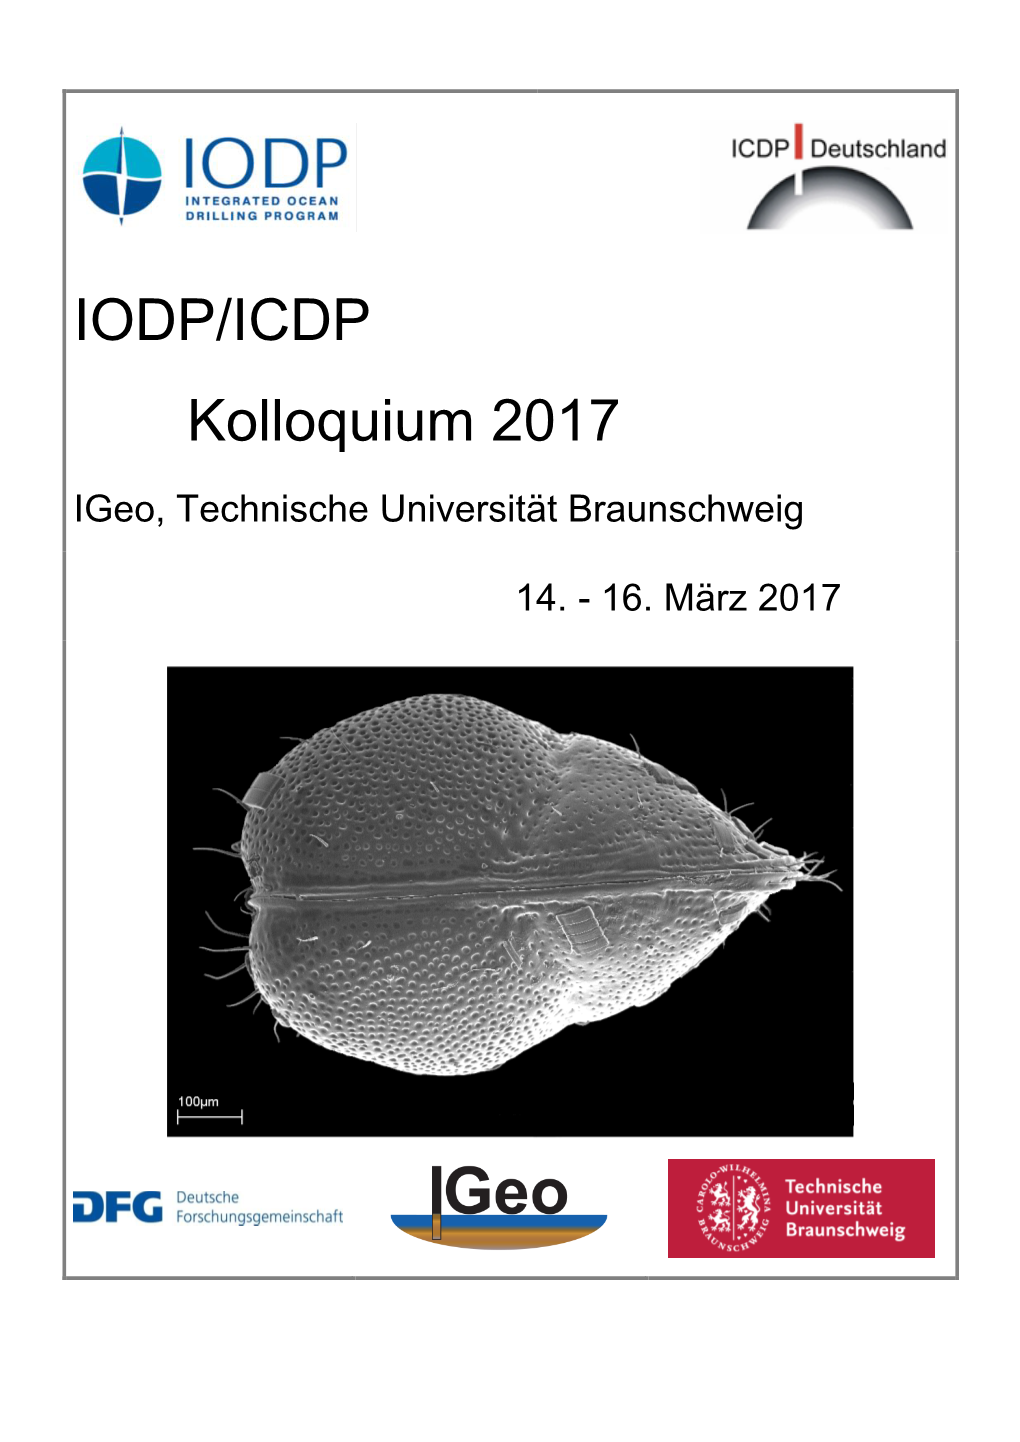 IODP/ICDP Kolloquium 2017